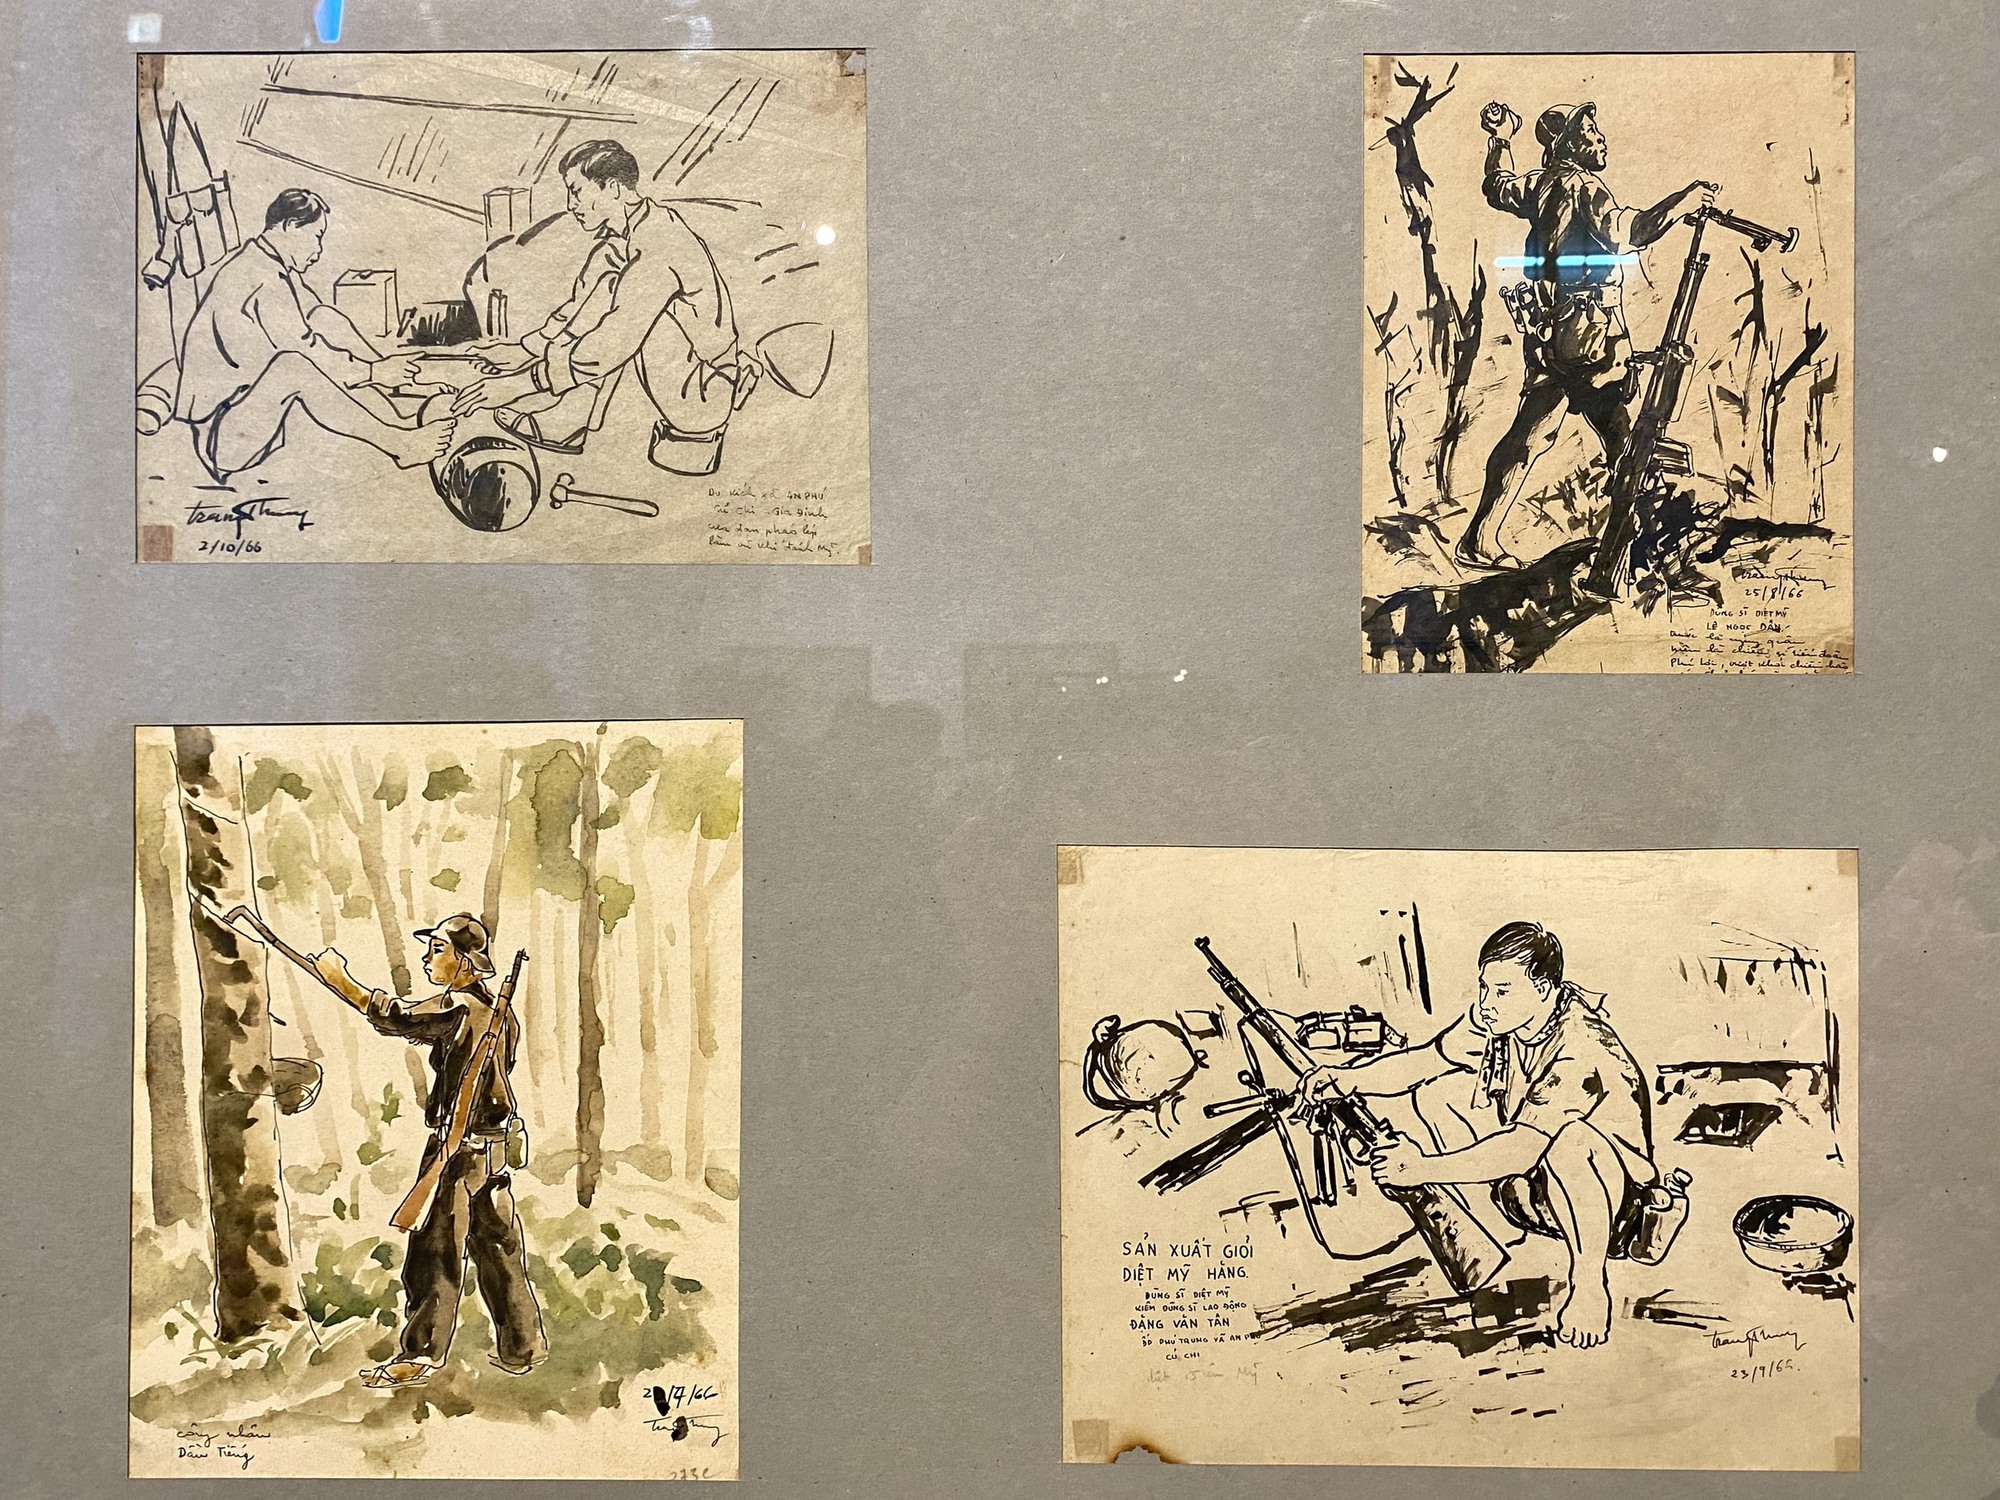 Chiêm ngưỡng những bức ký họa chiến trường được lưu giữ hơn 60 năm - Ảnh 5.